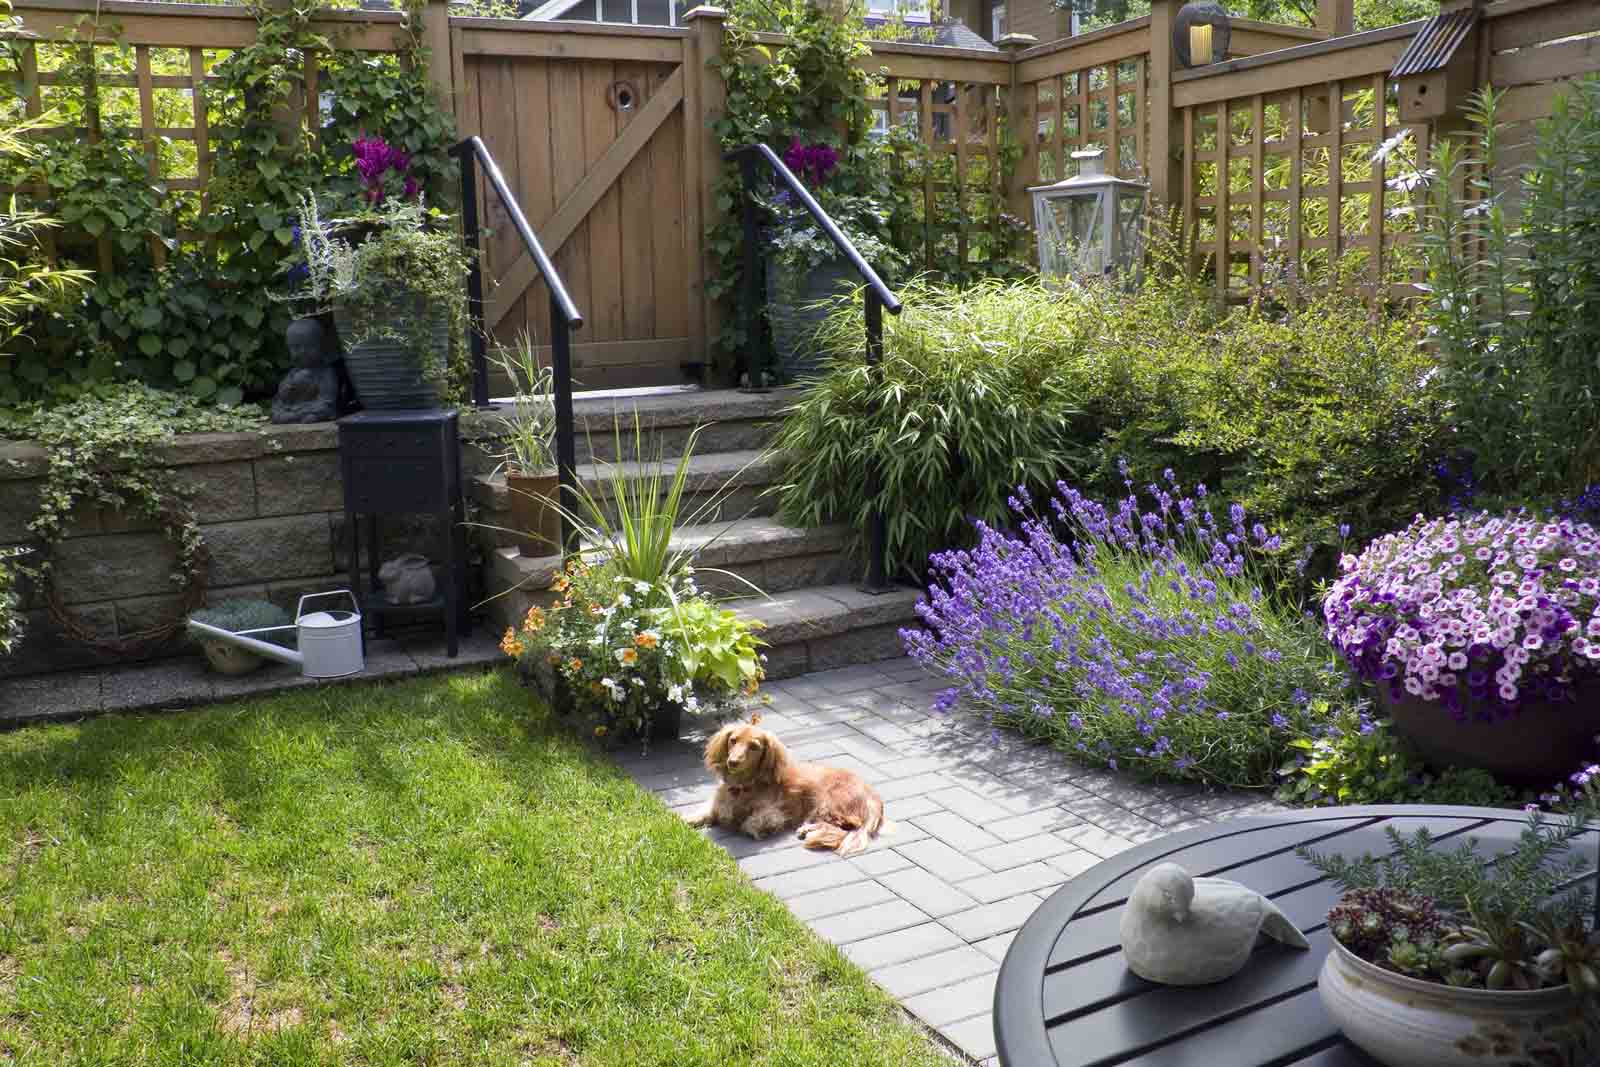 Ein Dackel sitzt mitten eines Garten und blickt in die Kamera